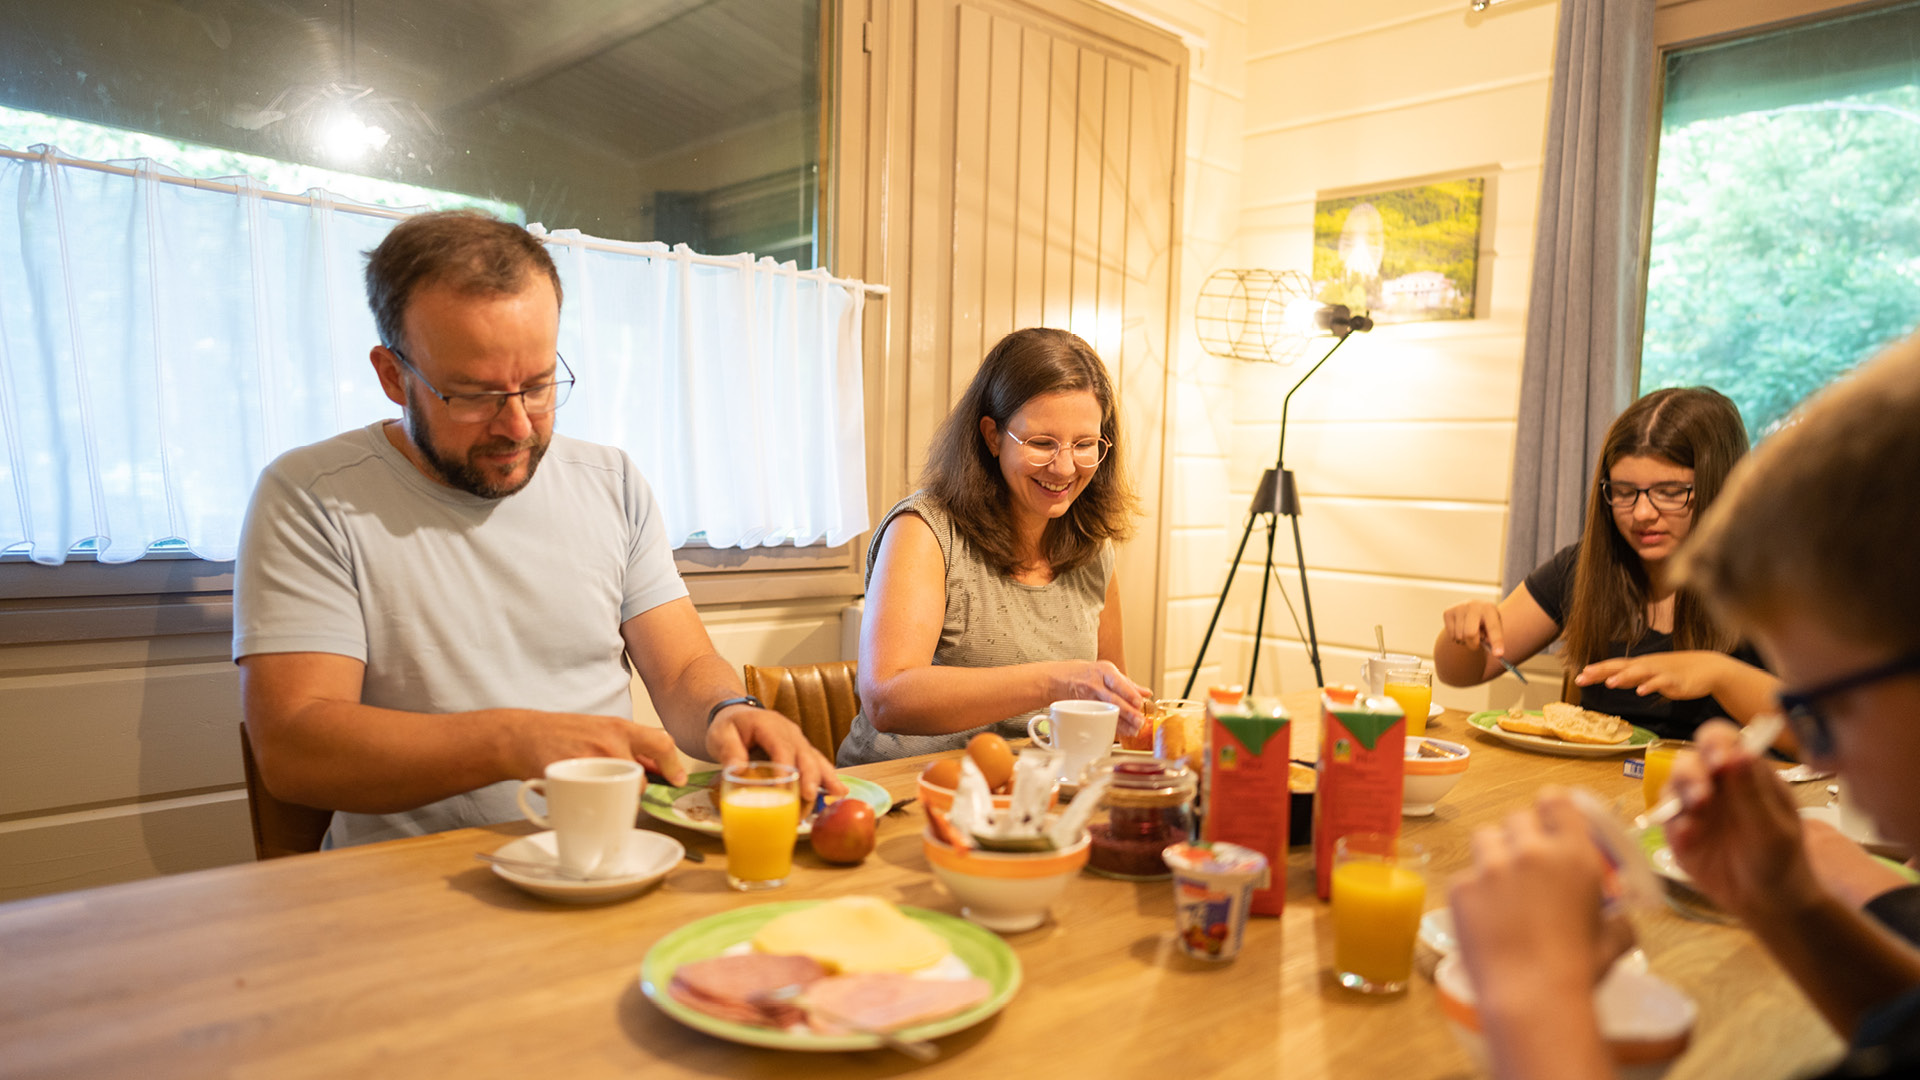 Die Familie genießt das gemeinsame Frühstück.